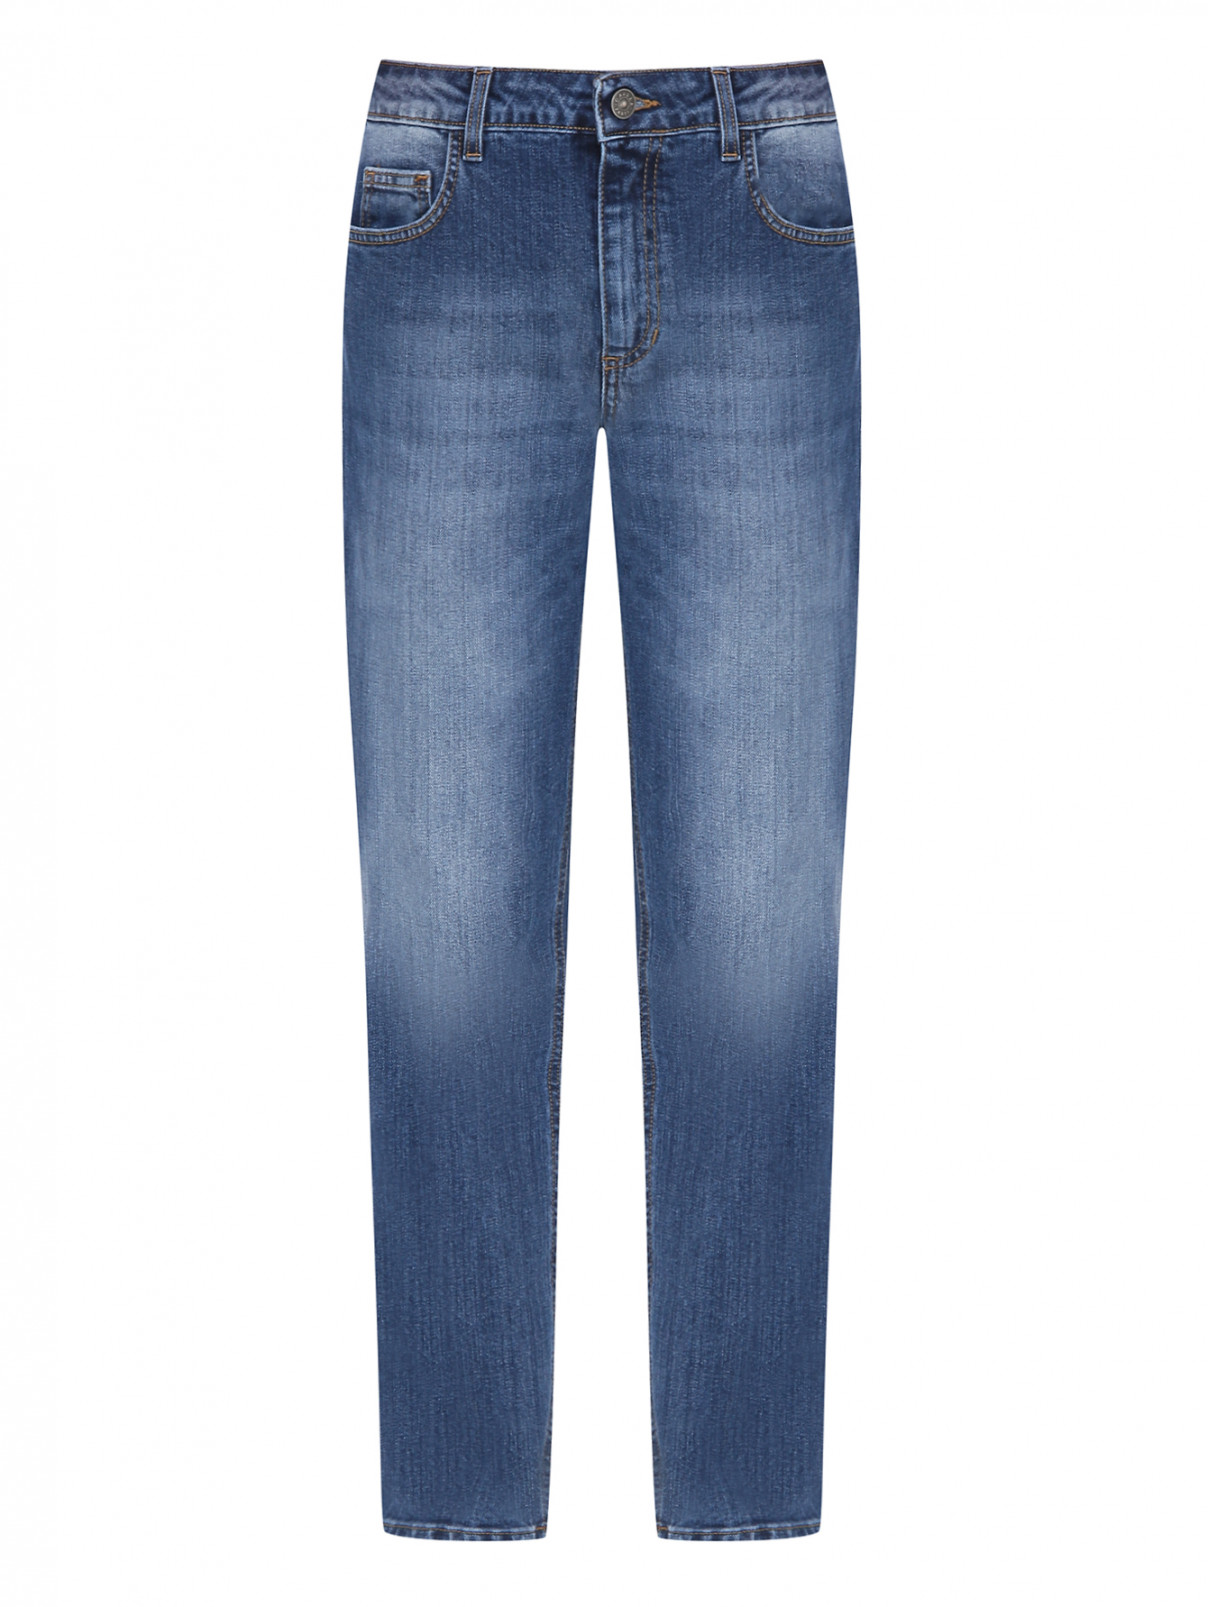 Хлопковые джинсы с принтом Gaelle  –  Общий вид  – Цвет:  Синий